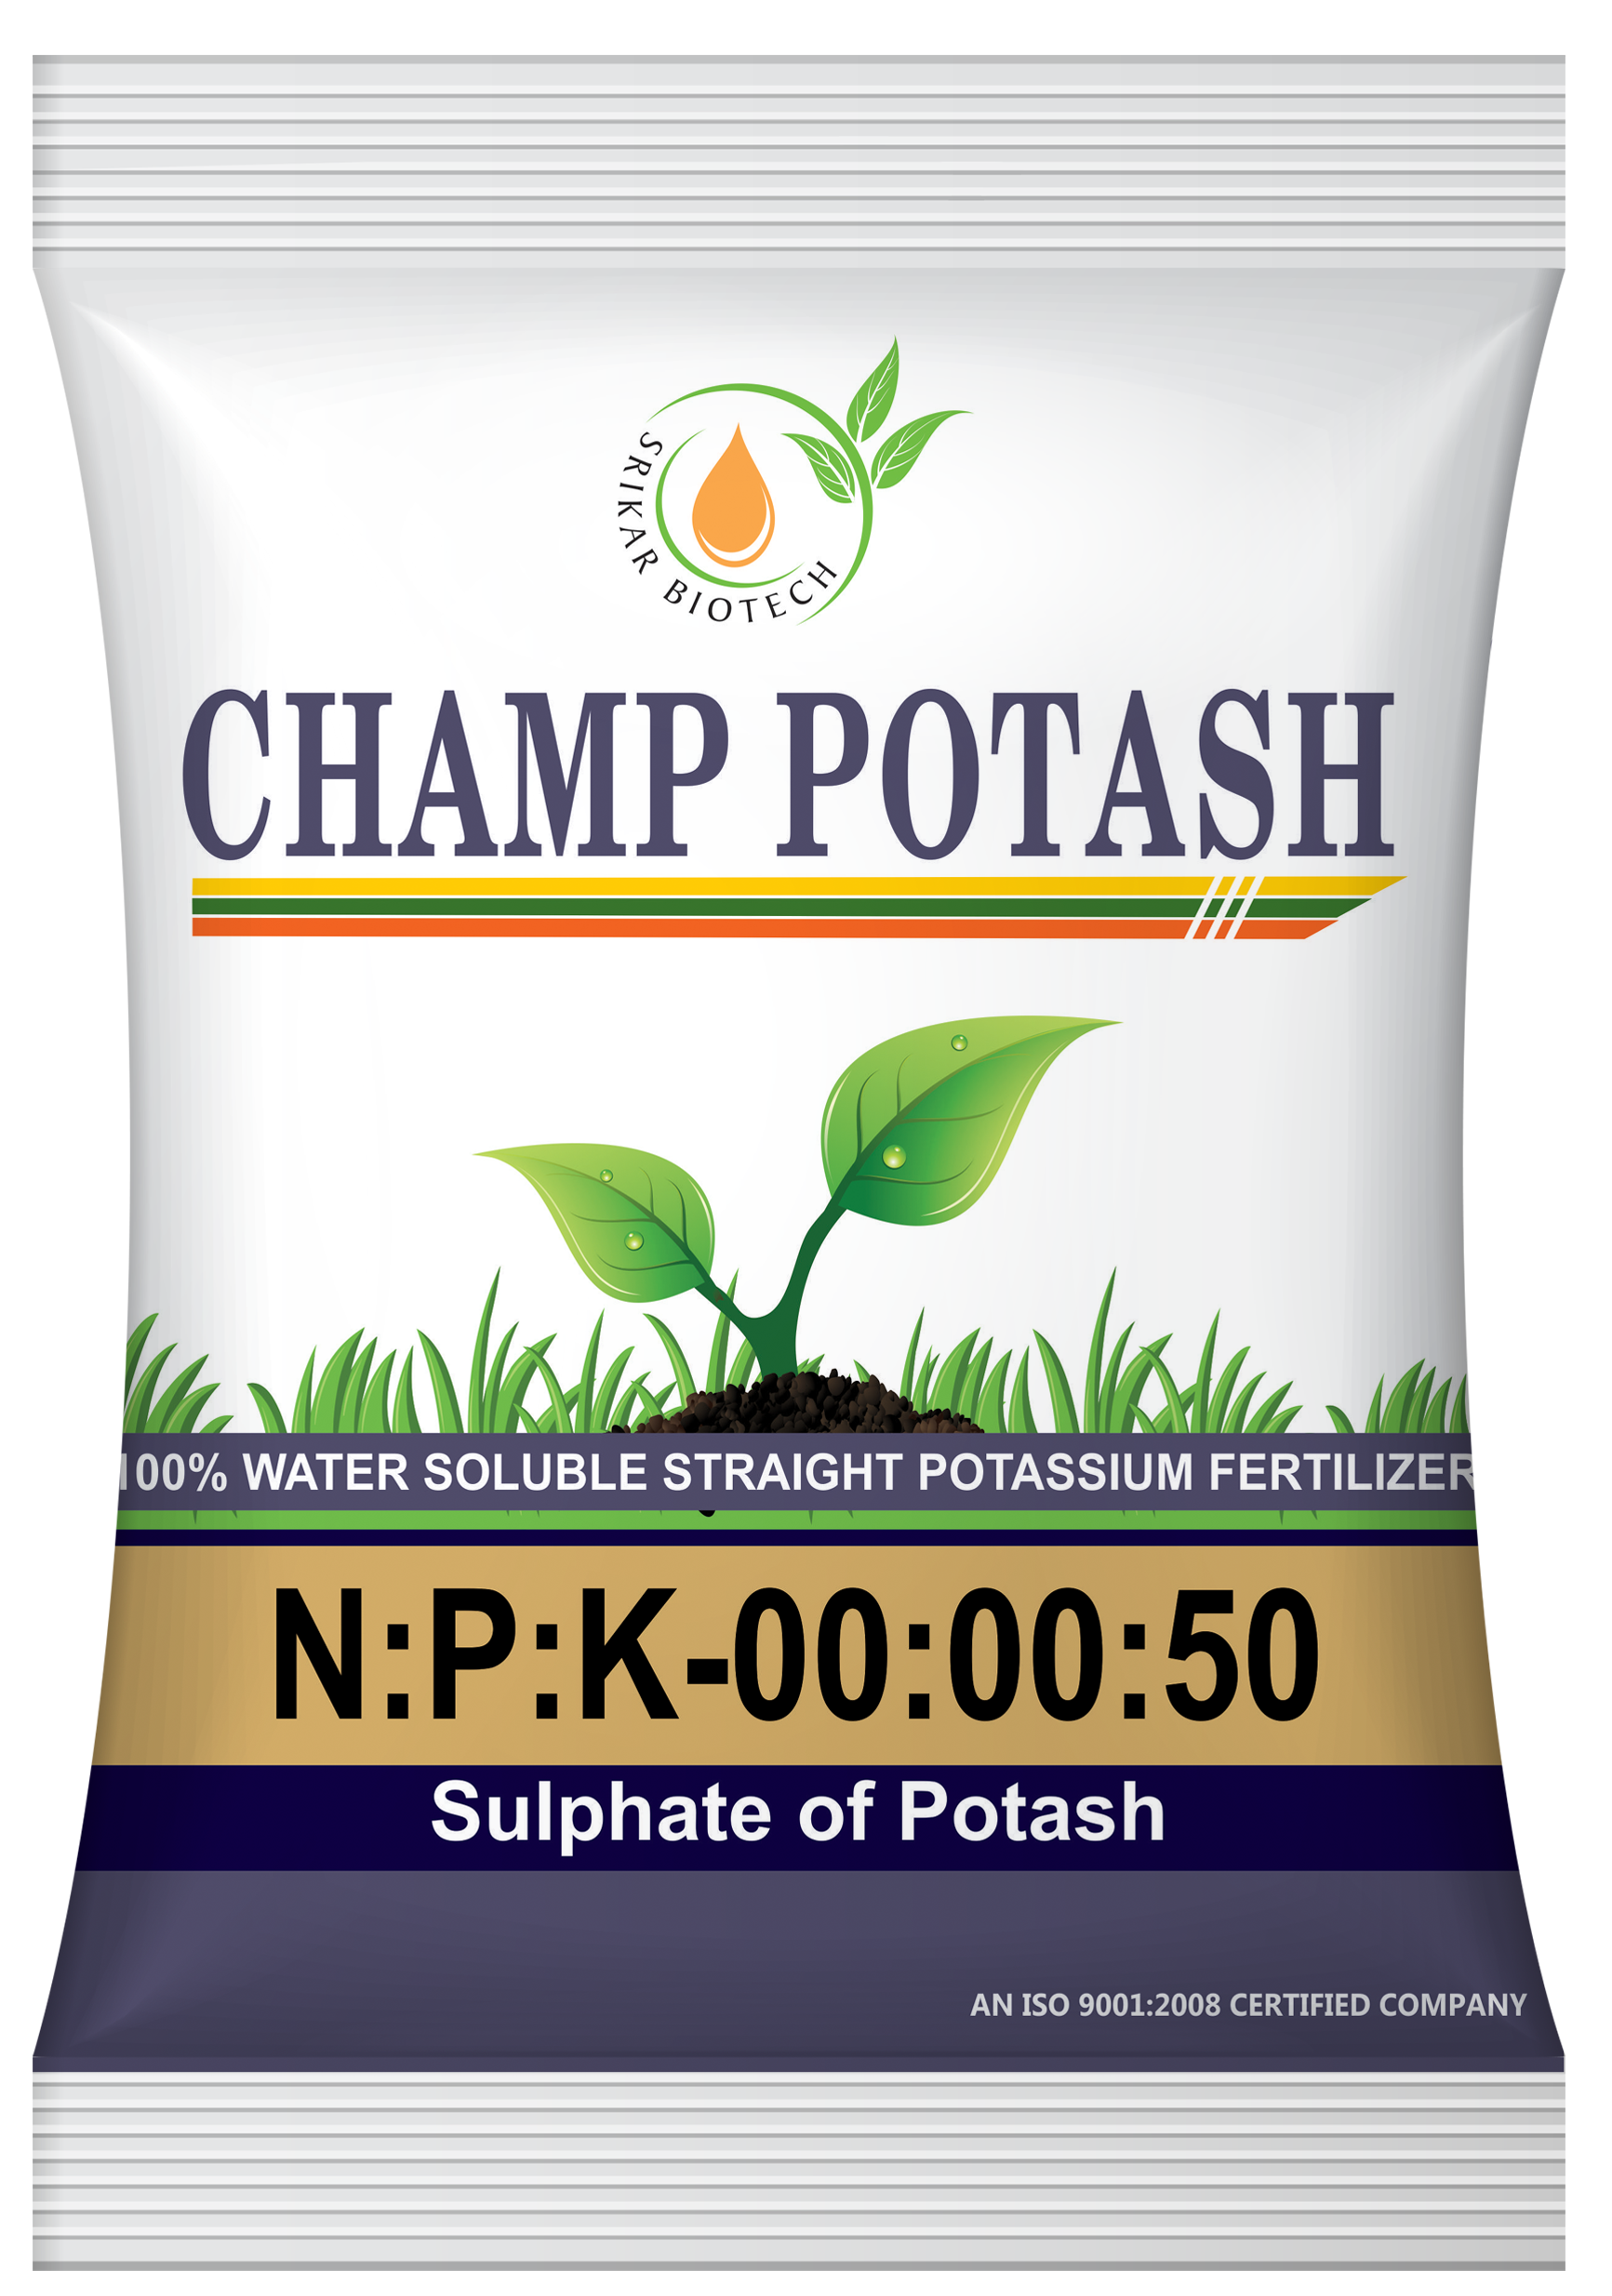 Champ Potash Image